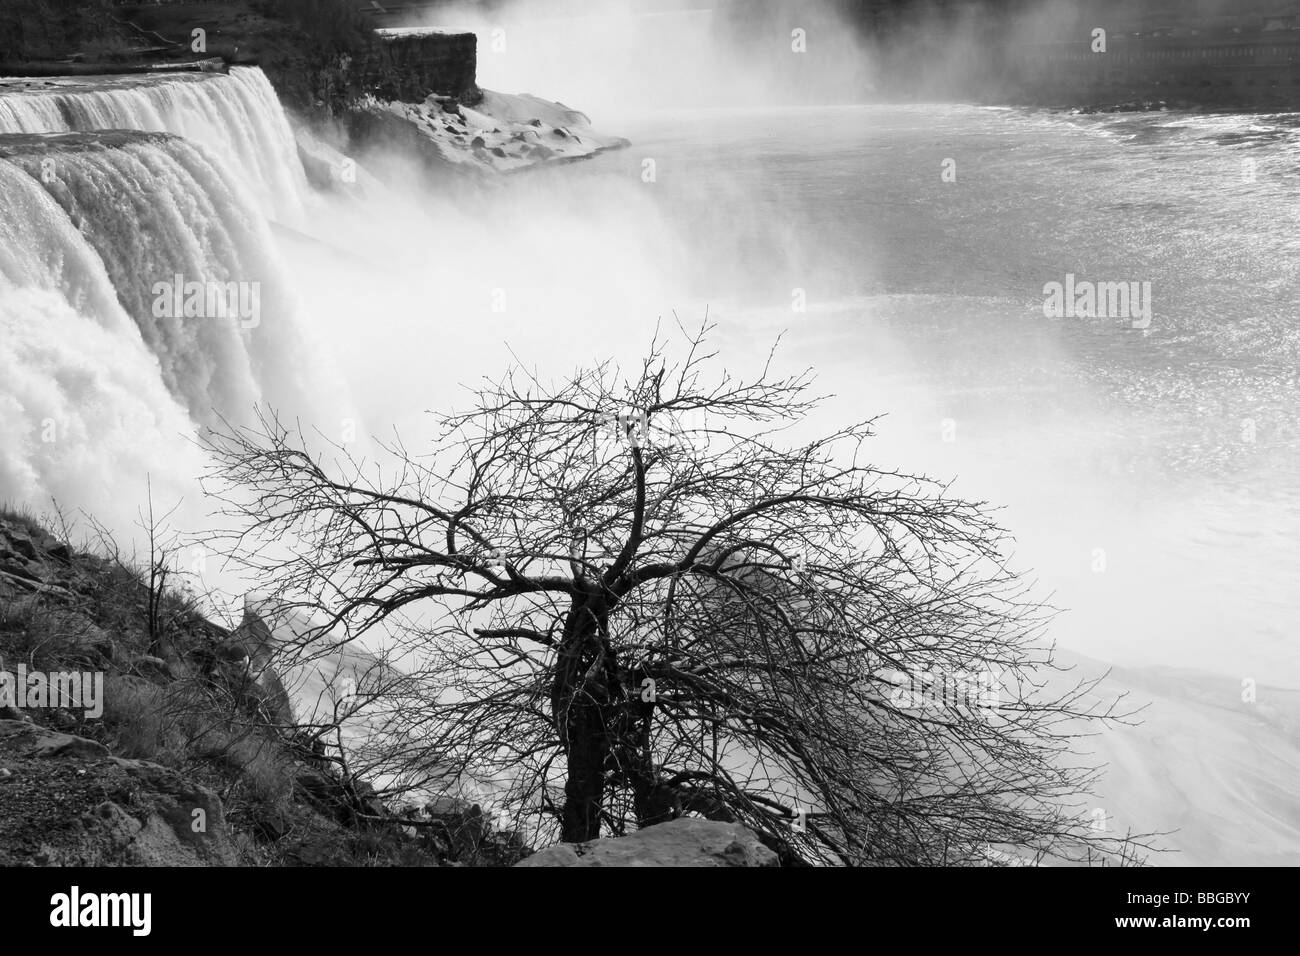 Niagara Falls, NY, USA Stock Photo